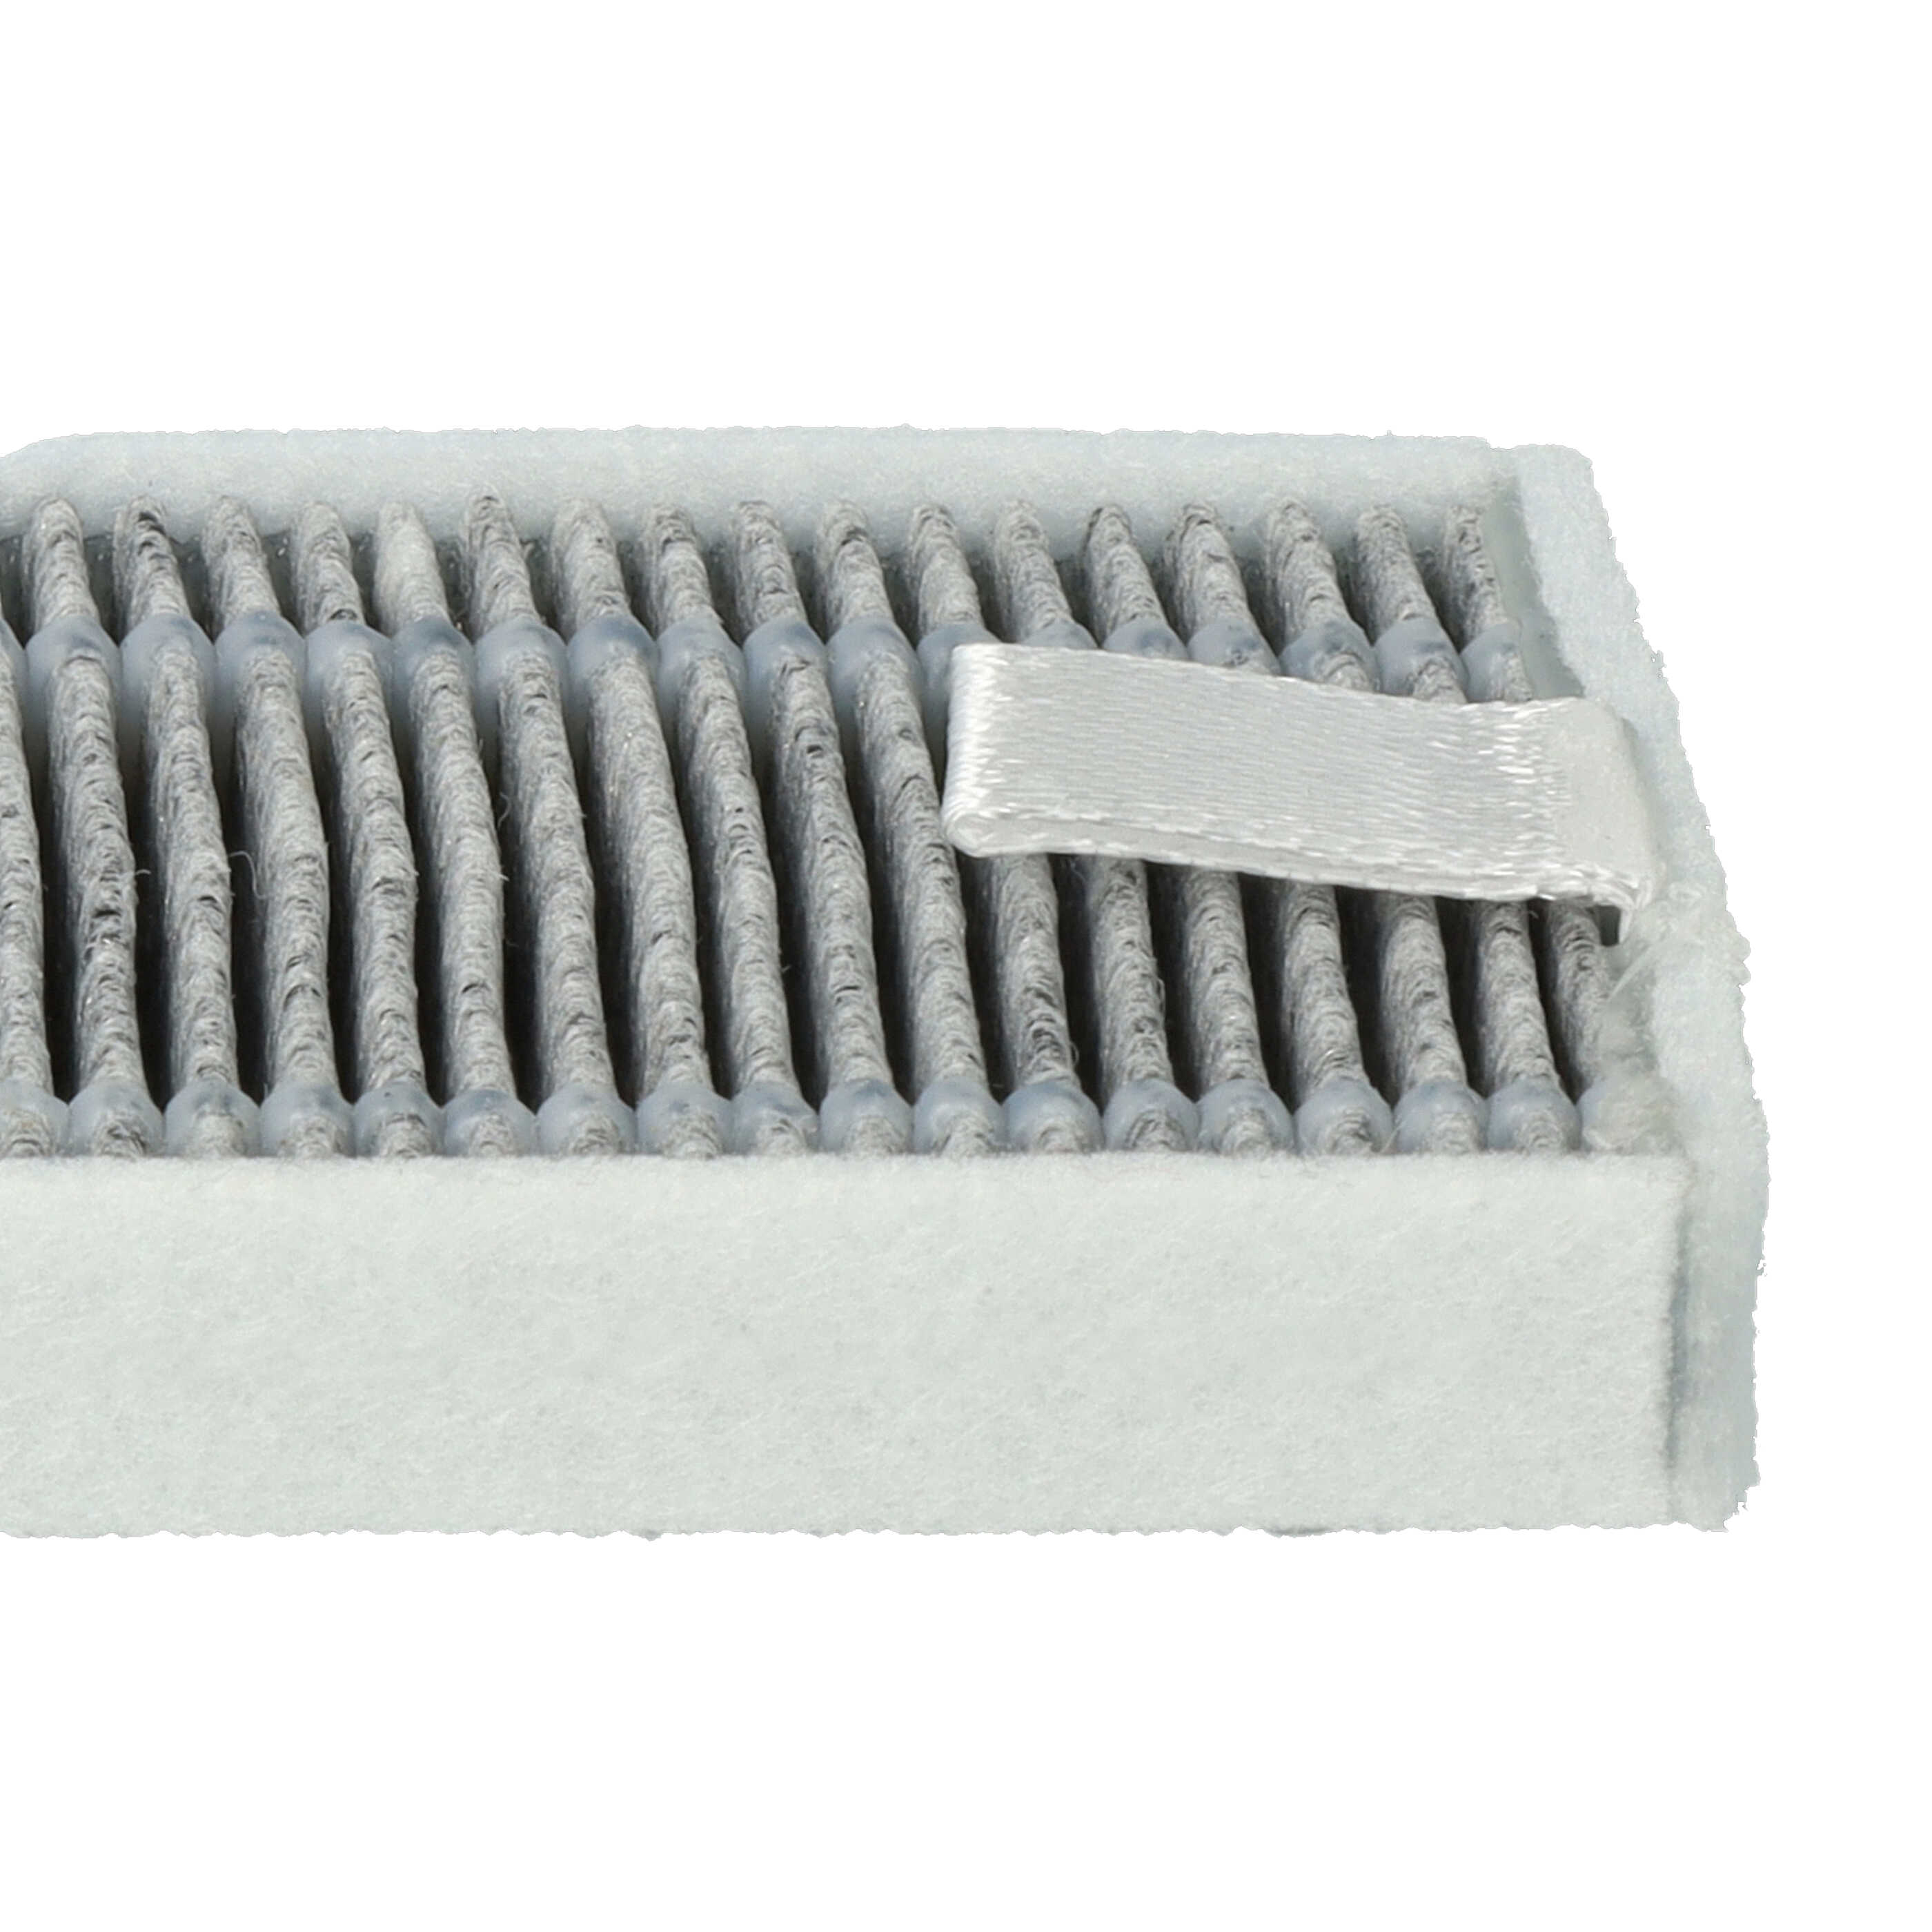 2x filtro carbón activo para robot aspirador Proscenic, Cecotec, Xiaomi M7 - 13 x 4 x 1 cm